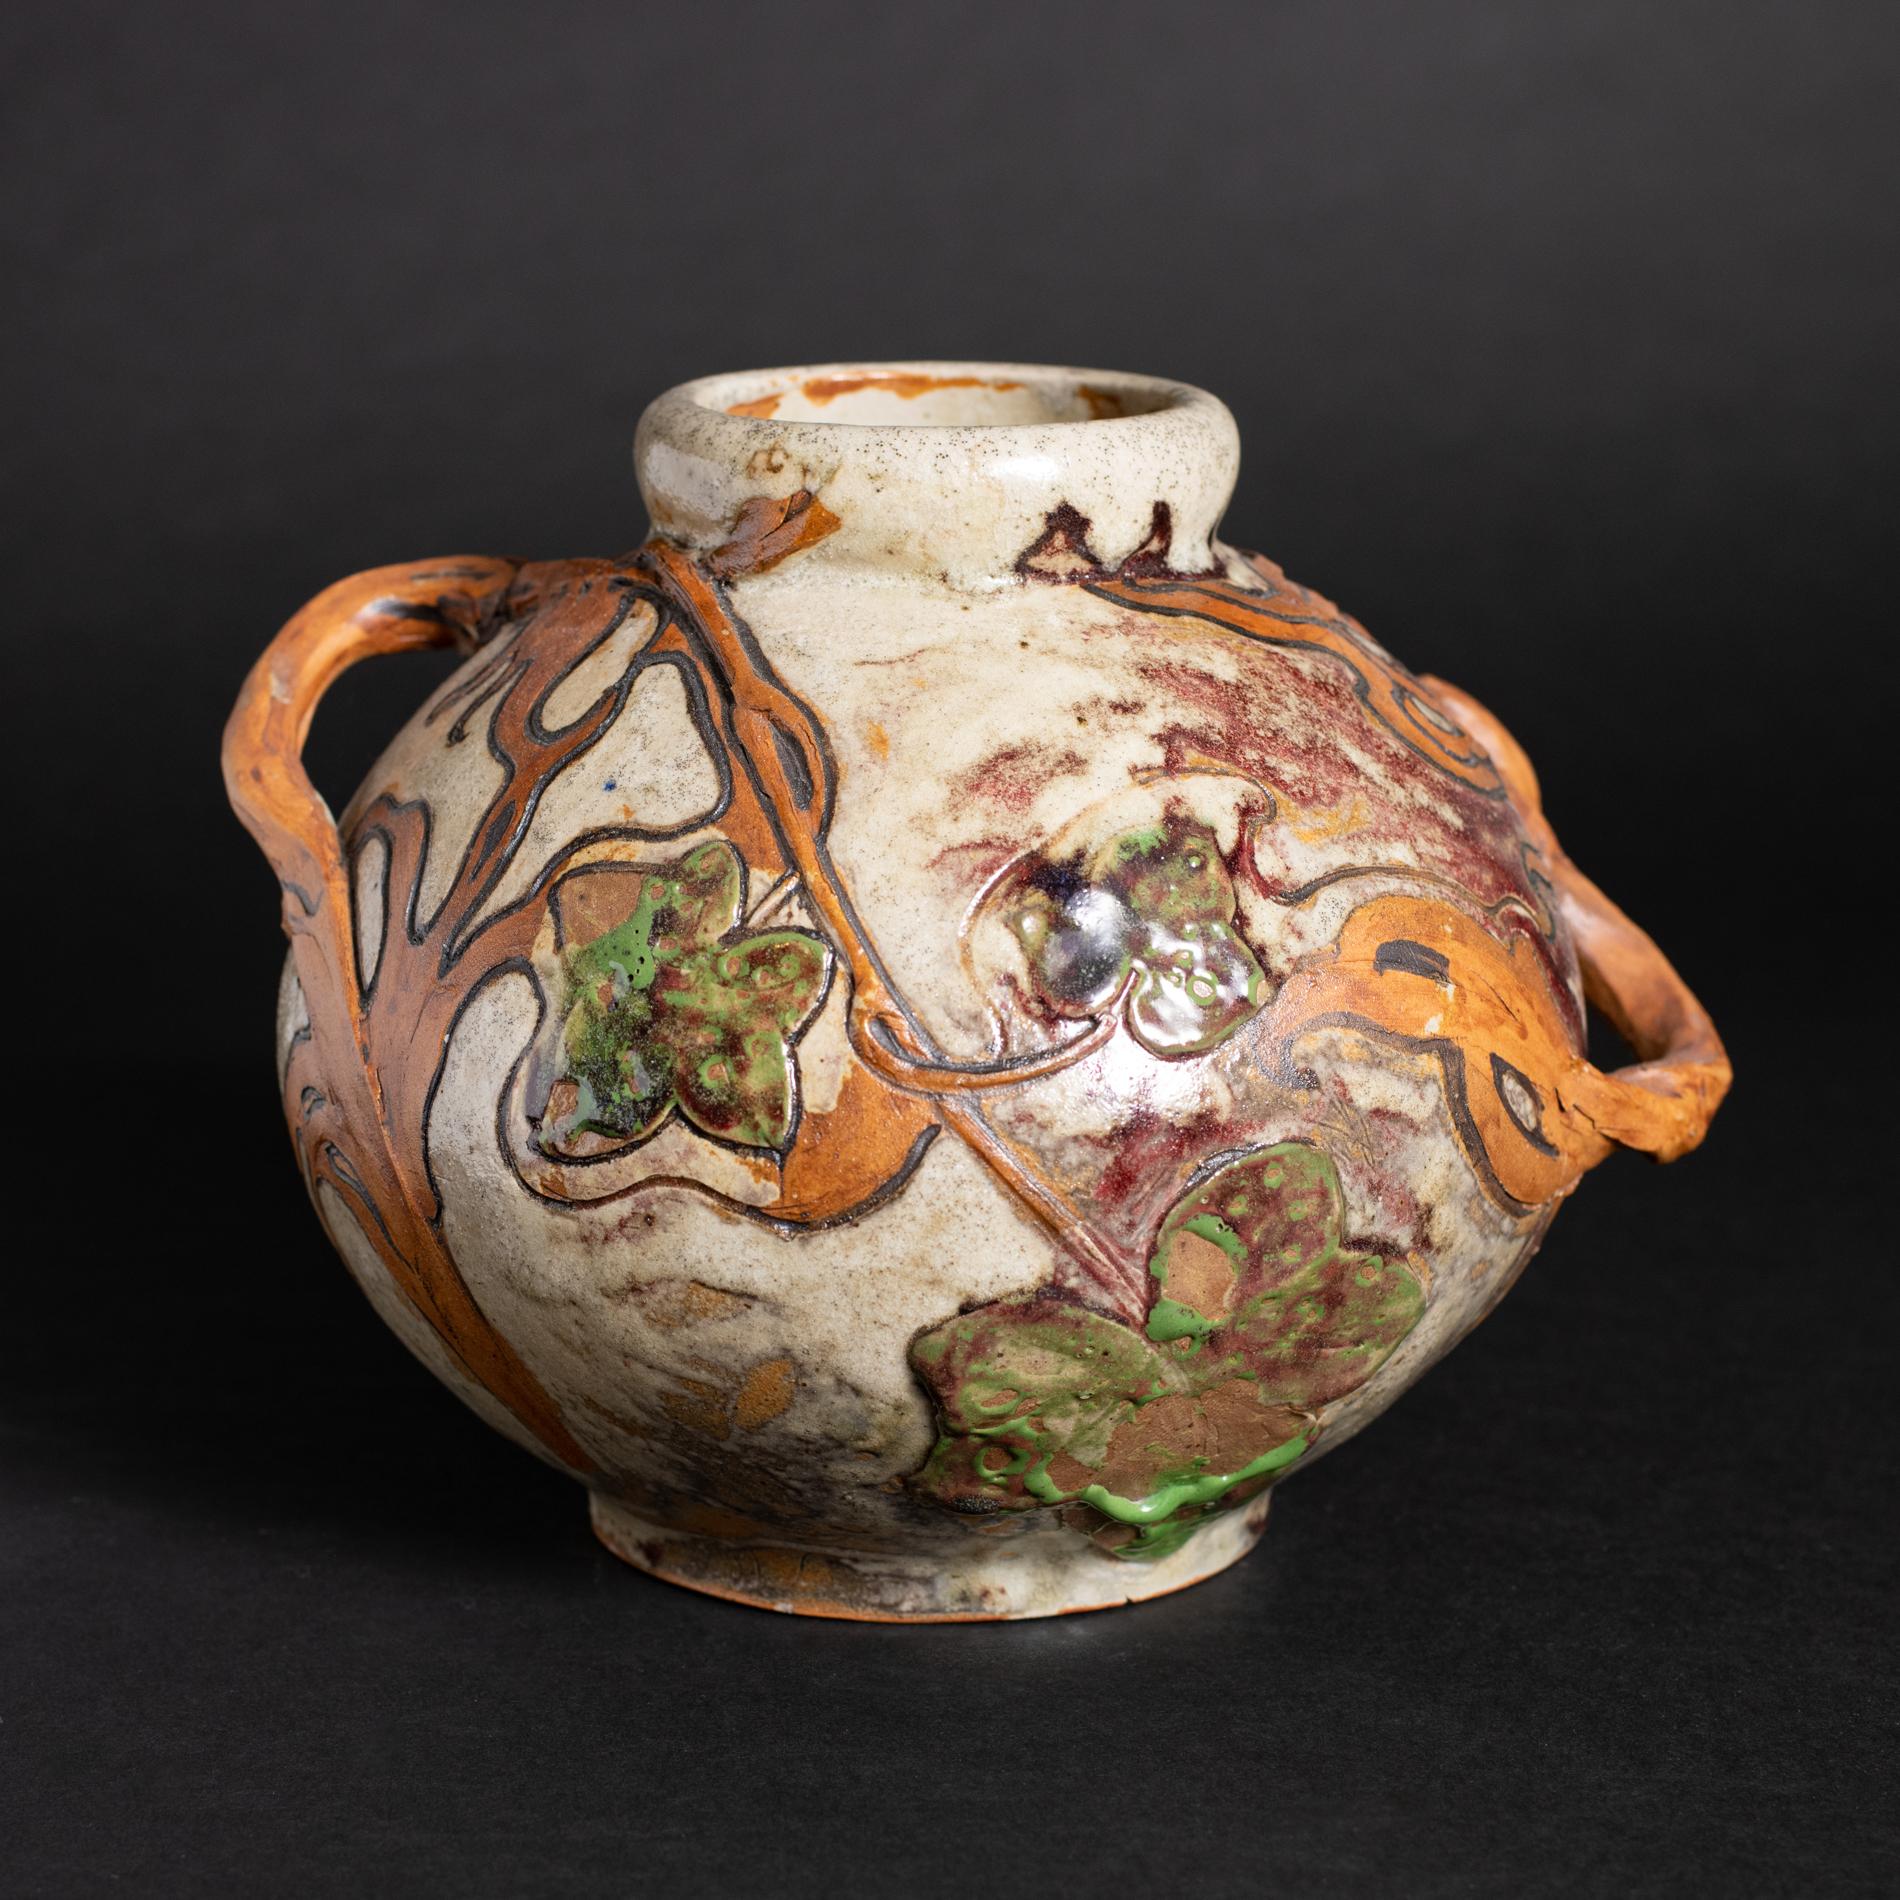 Les plus beaux exemples de vases produits en collaboration entre Edmond Lachenal et Emile Decoeur datent de 1901-1904. Ce vase, dont le dessous porte la mention 